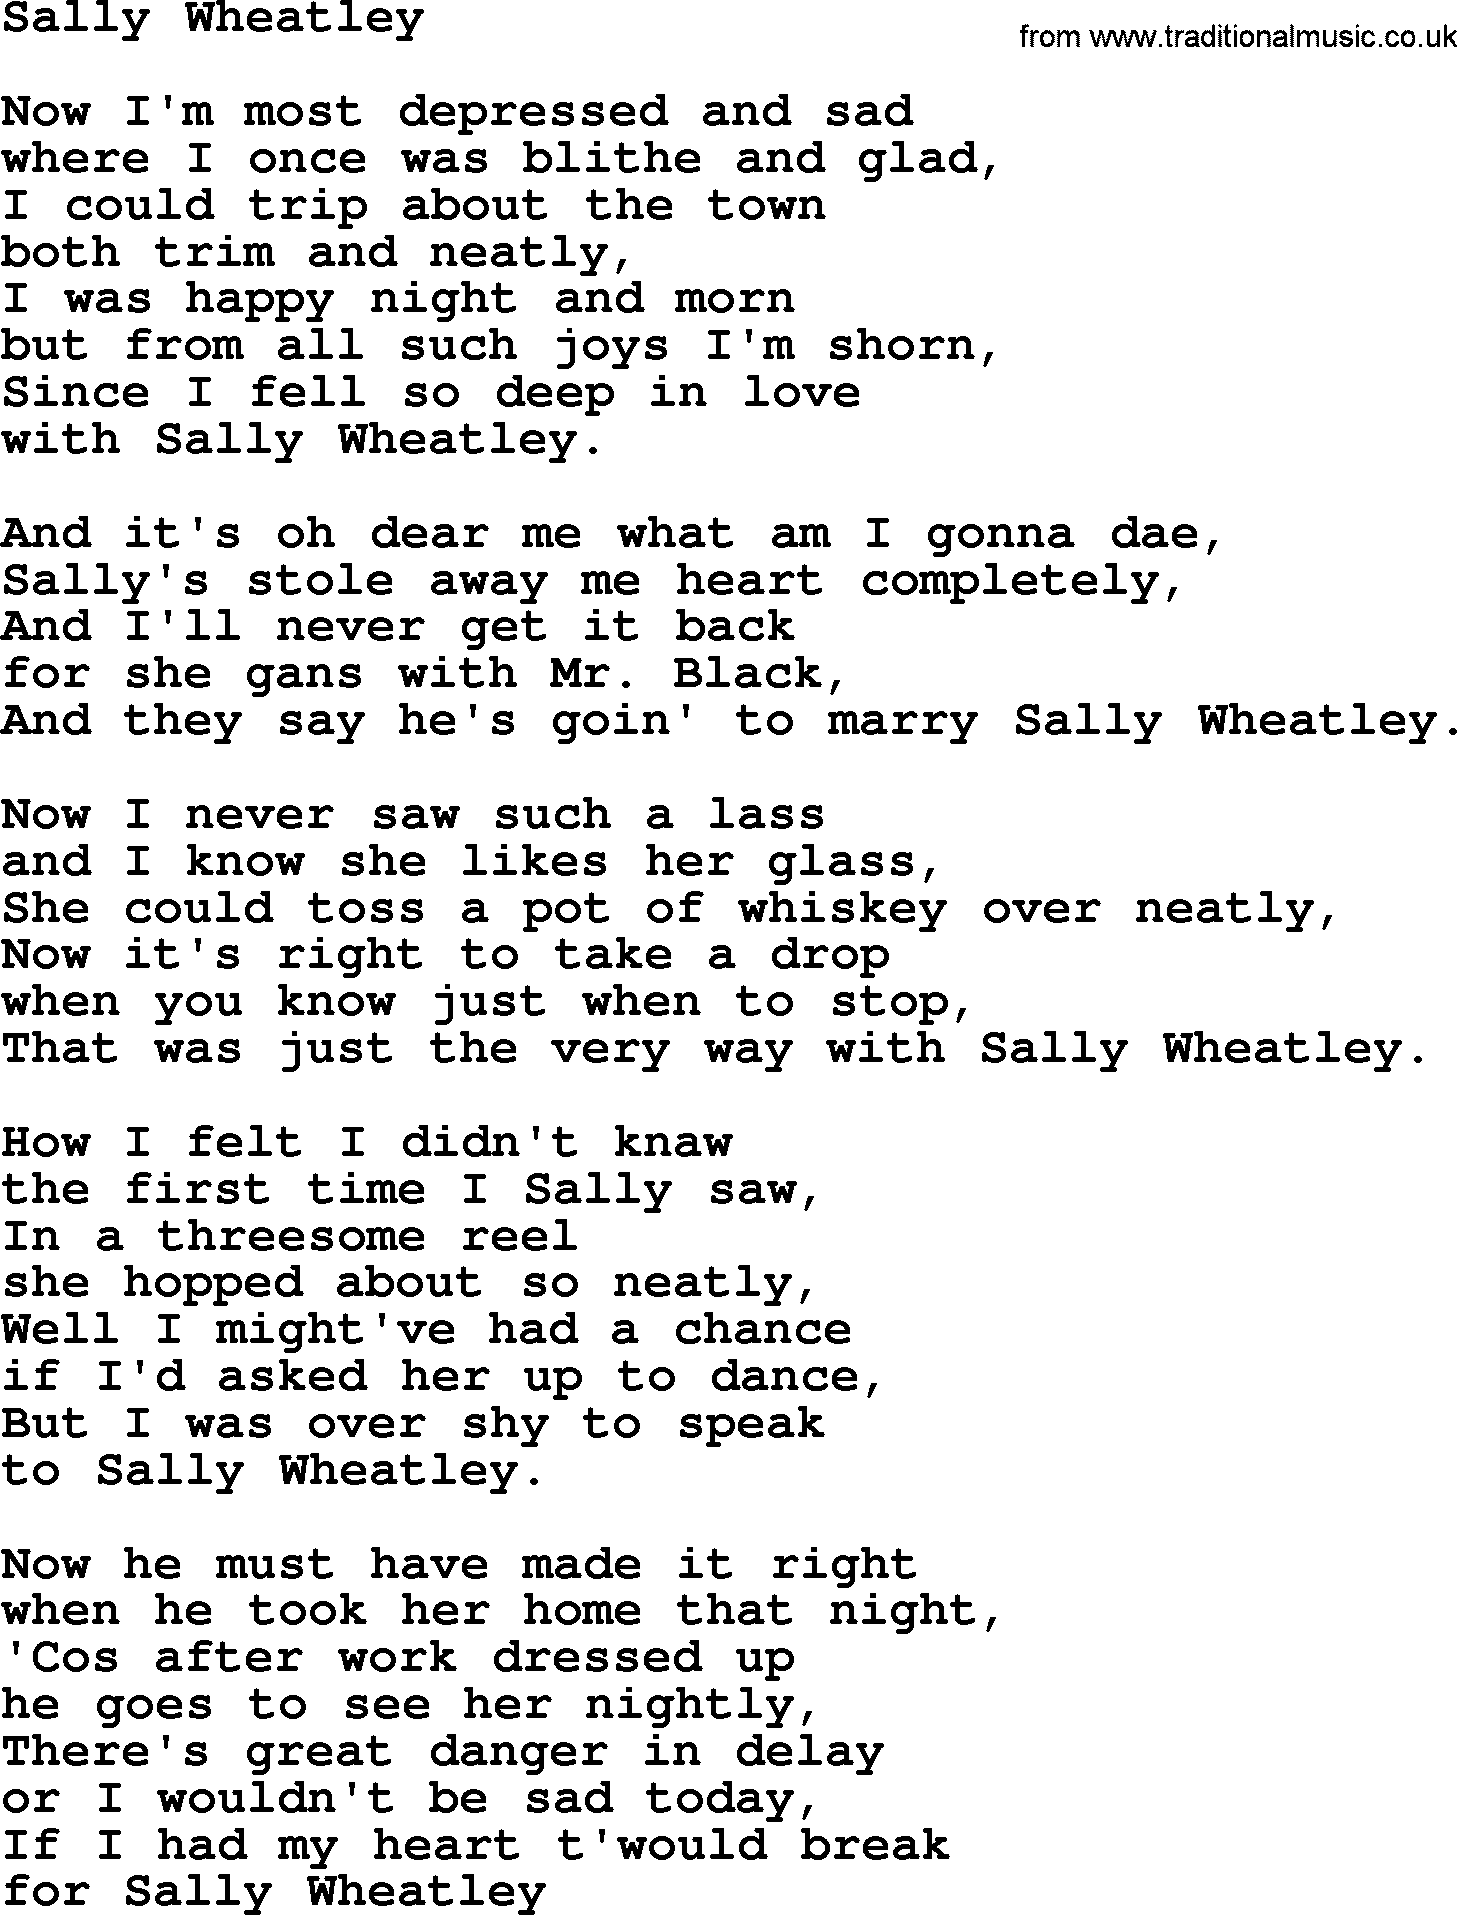 The Dubliners song: Sally Wheatley, lyrics